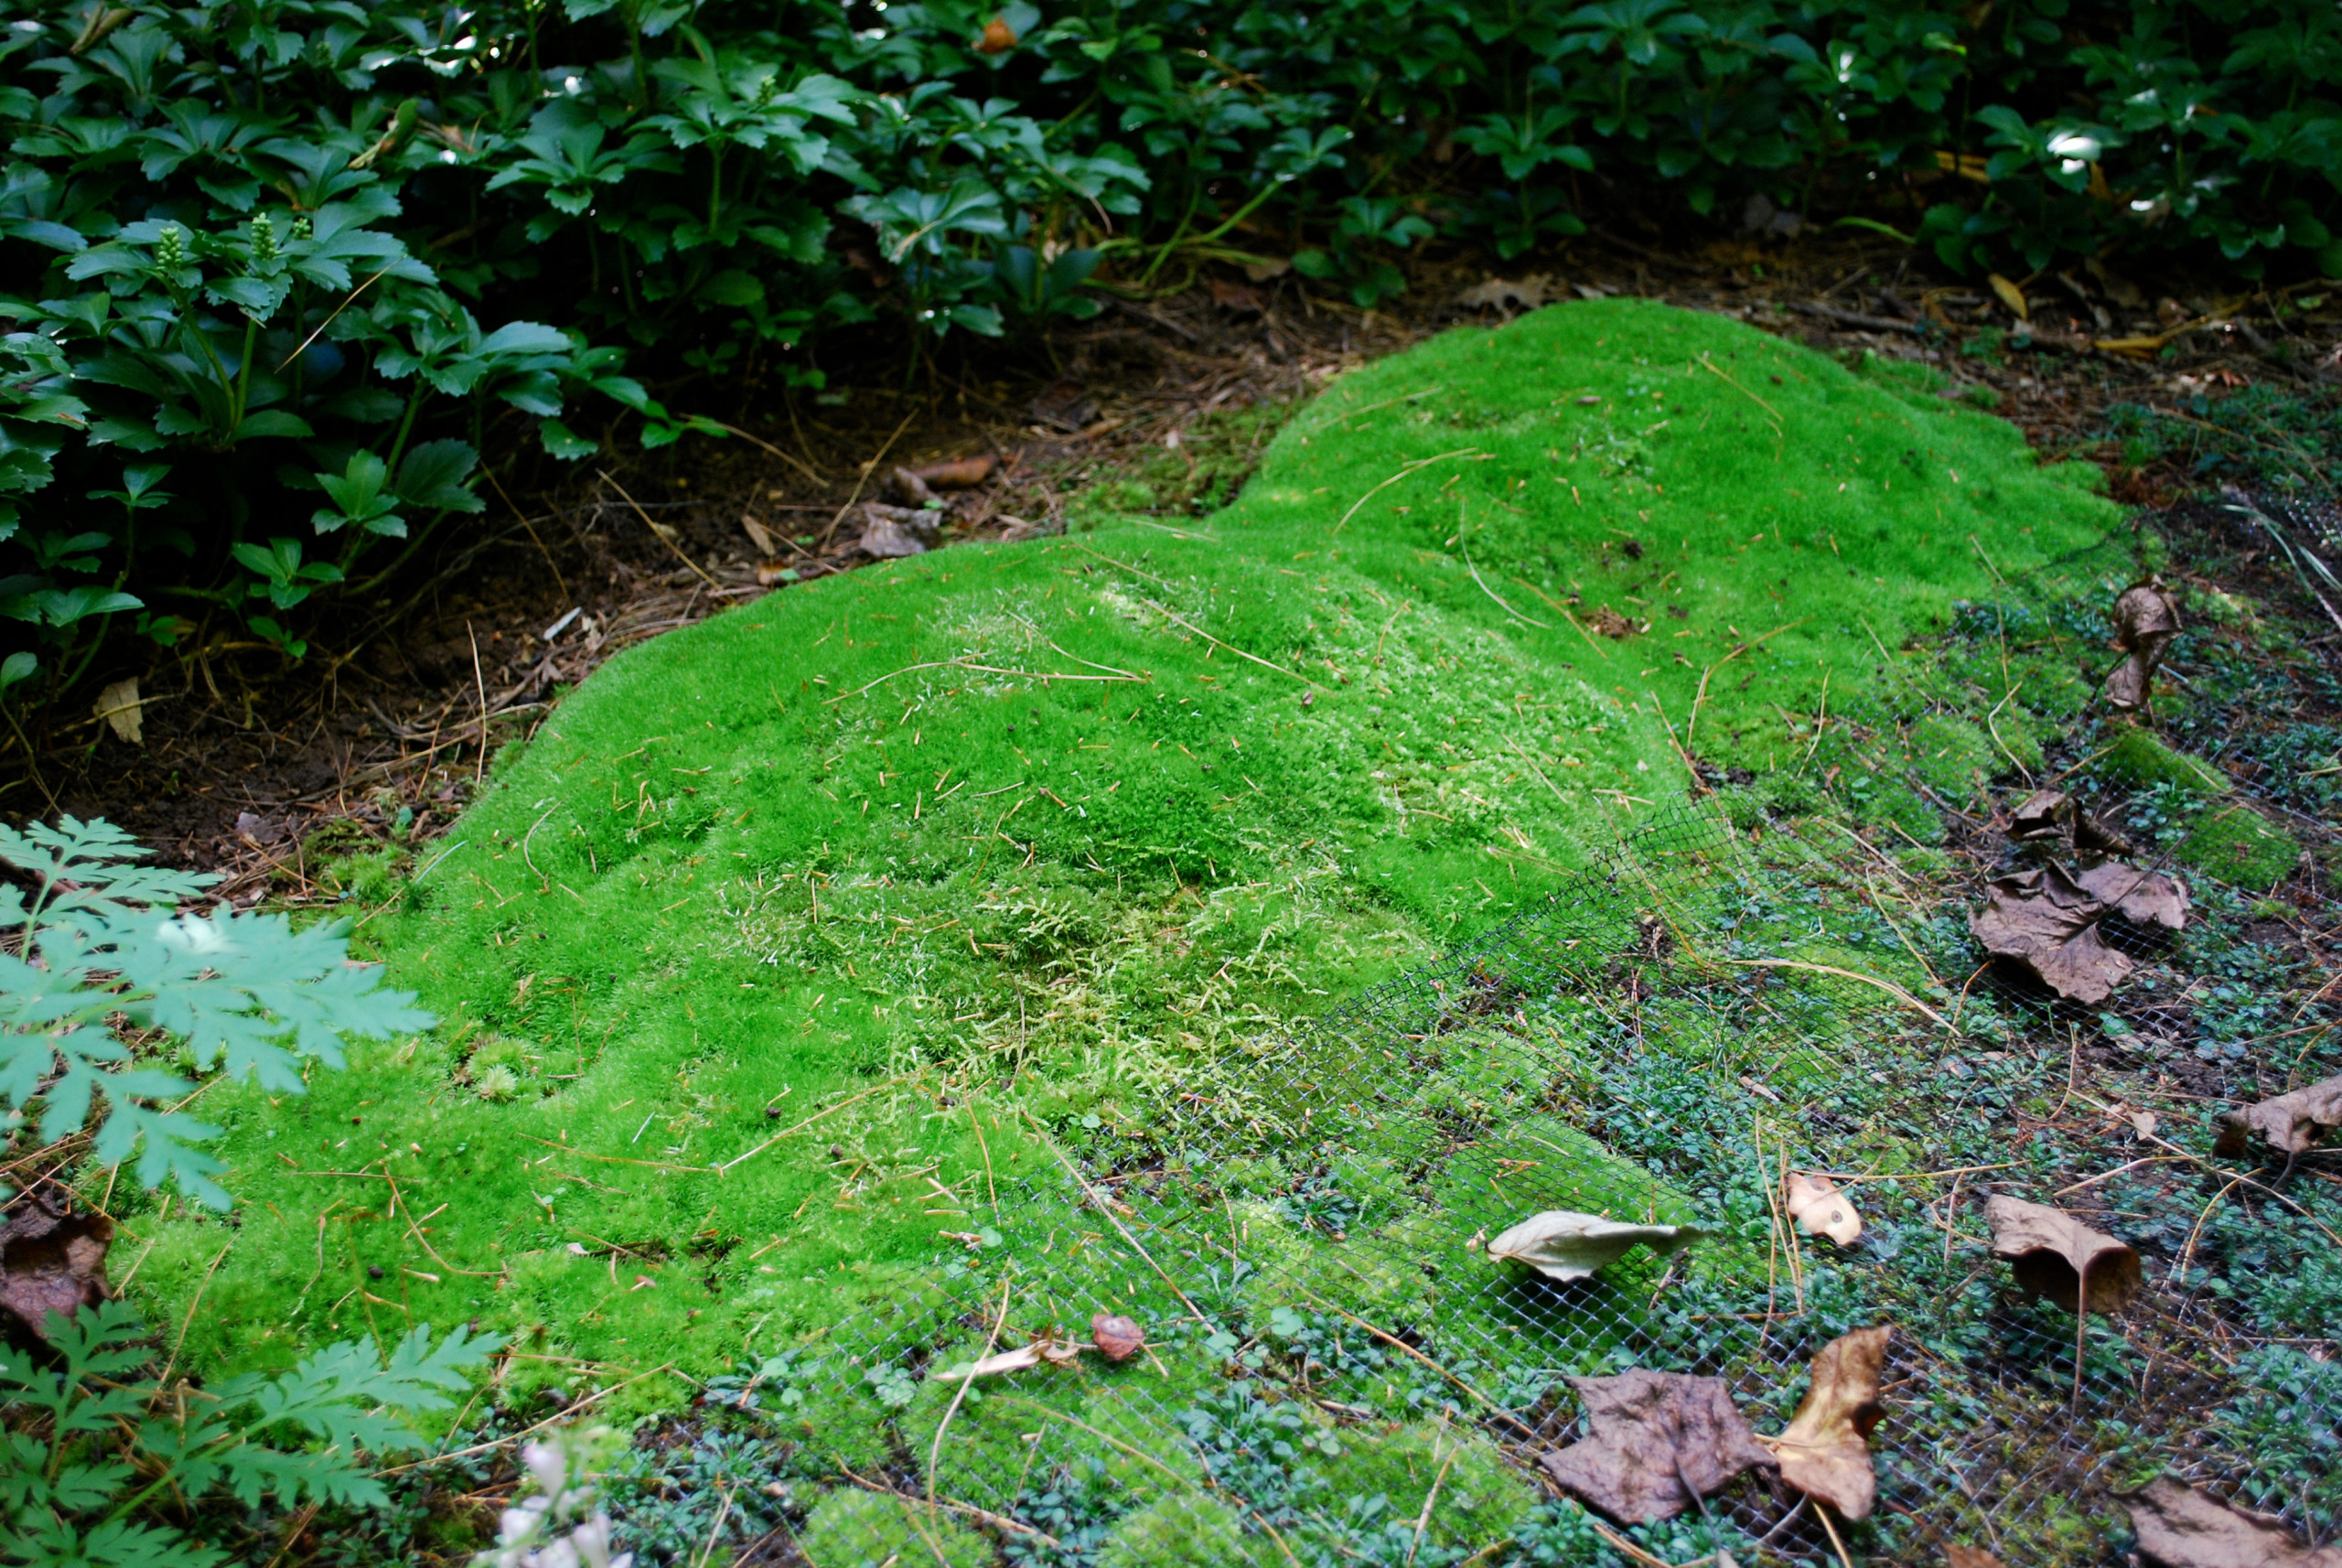 Moss garden